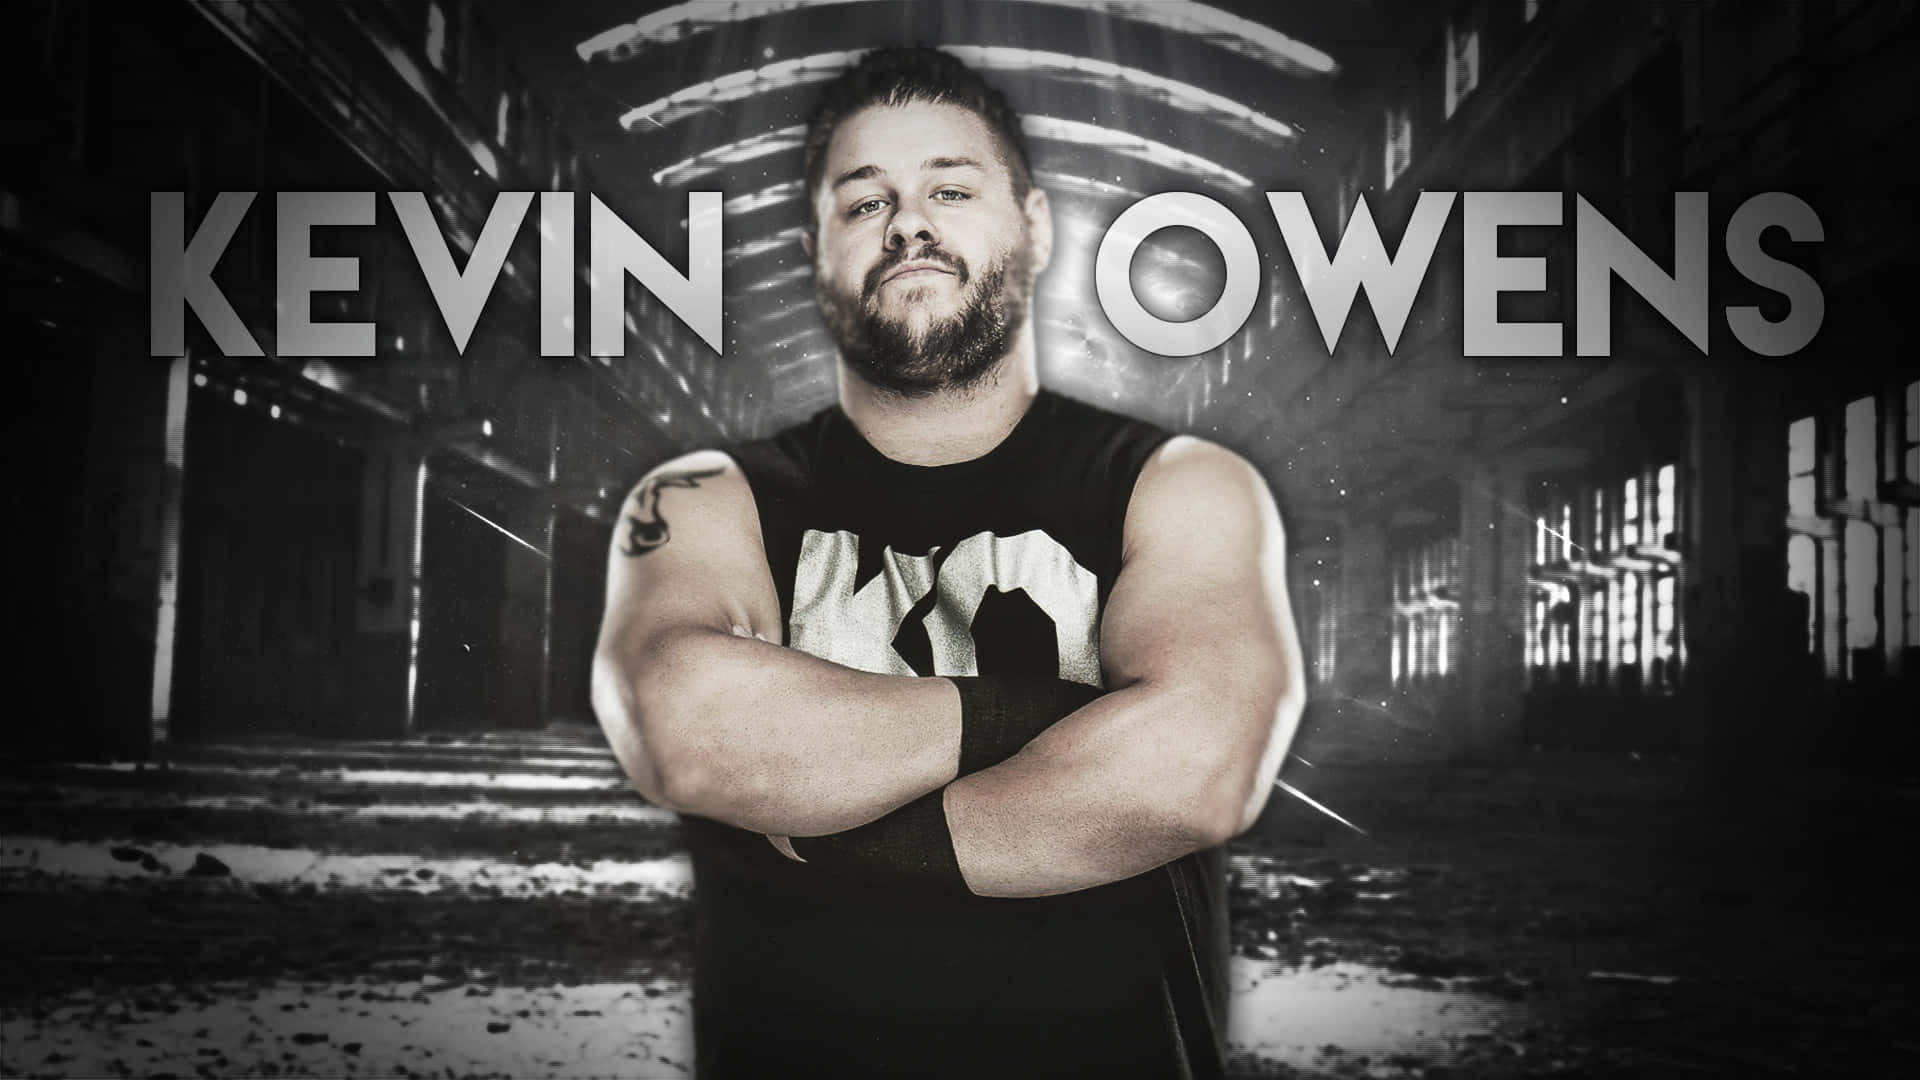 Kevin Owens Wrestler Poster Background